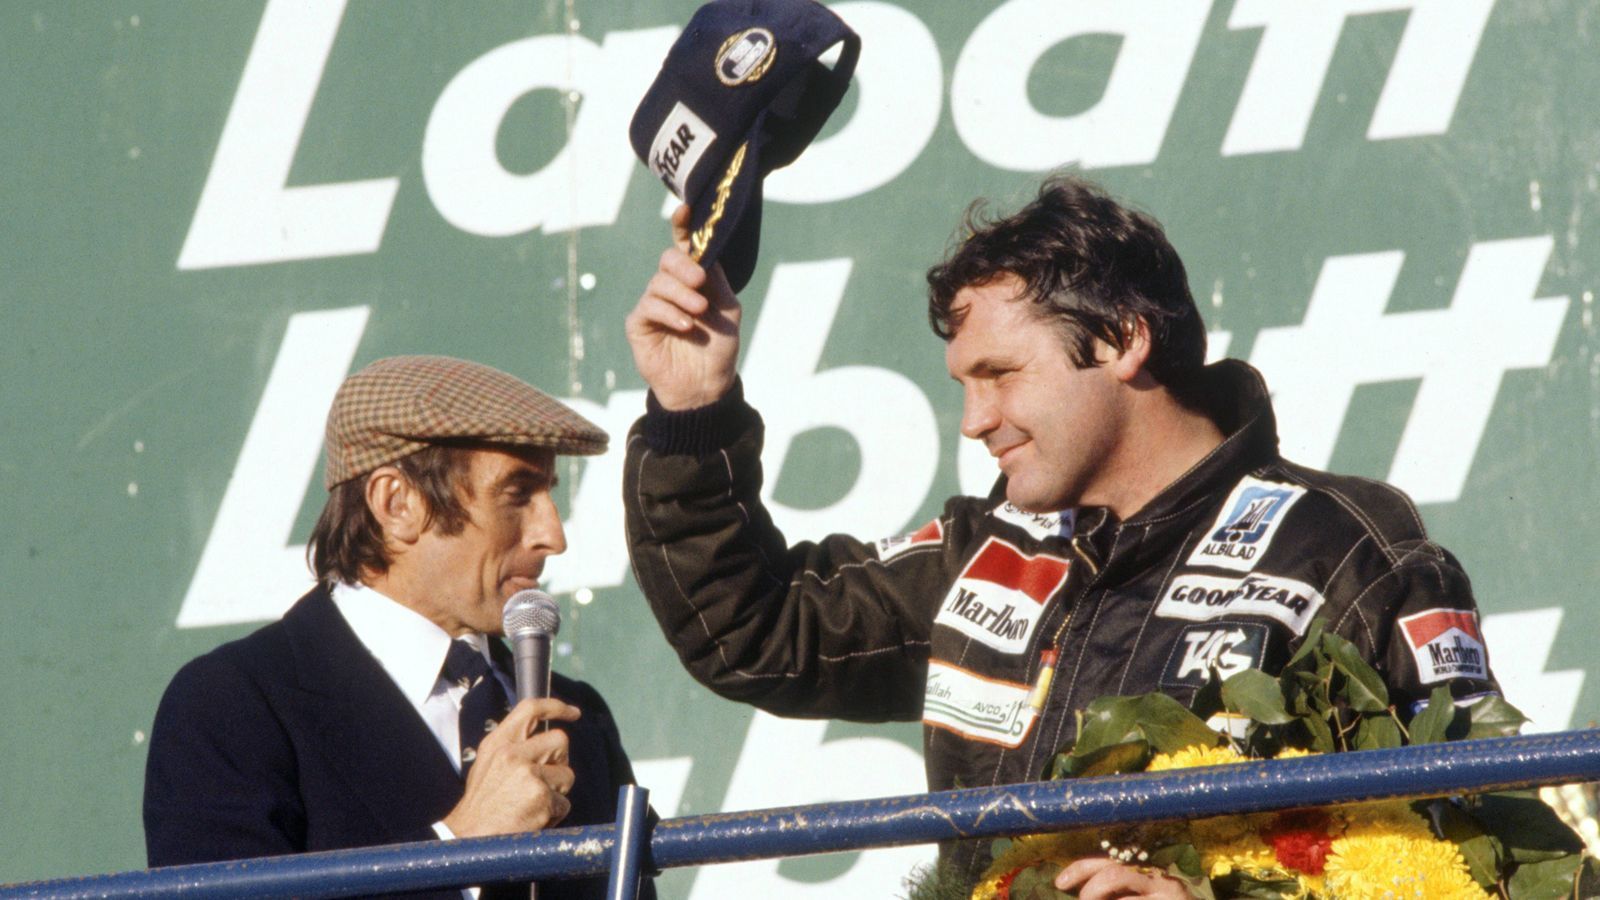 
                <strong>Erste Erfolge</strong><br>
                Erfolg stellte sich recht schnell ein. 1979 wurde dank Clay Regazzoni der erste Grand Prix gewonnen, es war der Durchbruch, denn sein Teamkollege Alan Jones gewann vier der verbliebenen sechs Rennen des Jahres, Williams wurde als Konstrukteur Gesamtzweiter. 1980 wurden dann sowohl das Team als auch Jones Weltmeister.
              